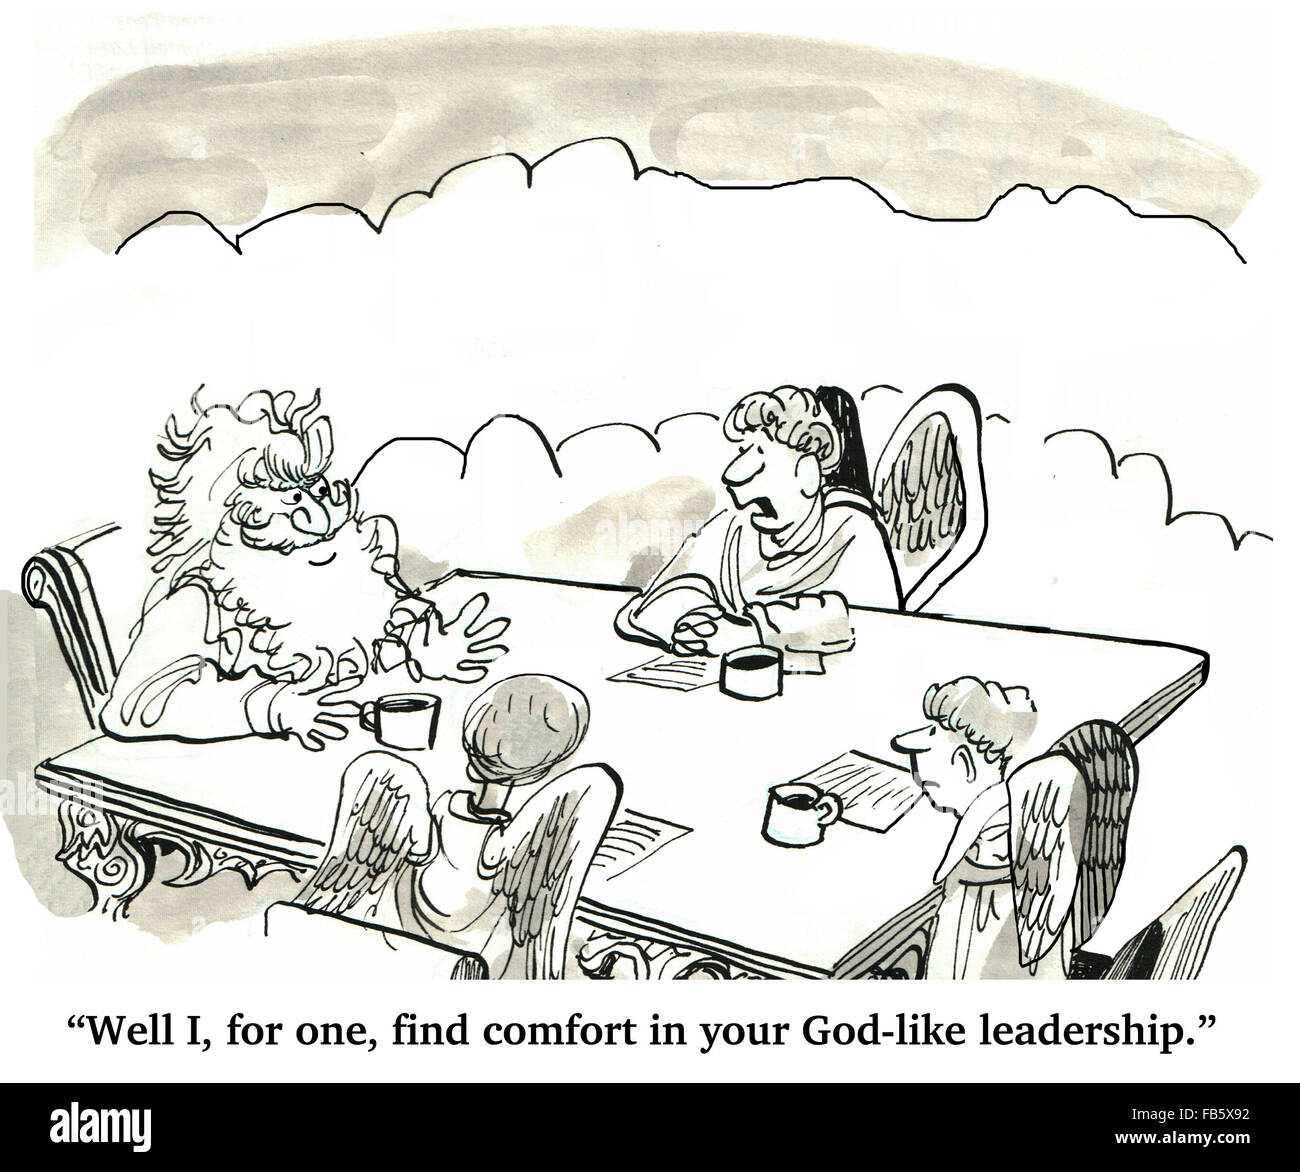 Business cartoon sulla leadership. Il manager trova conforto nell'imprenditore il Dio-come leadership. Foto Stock